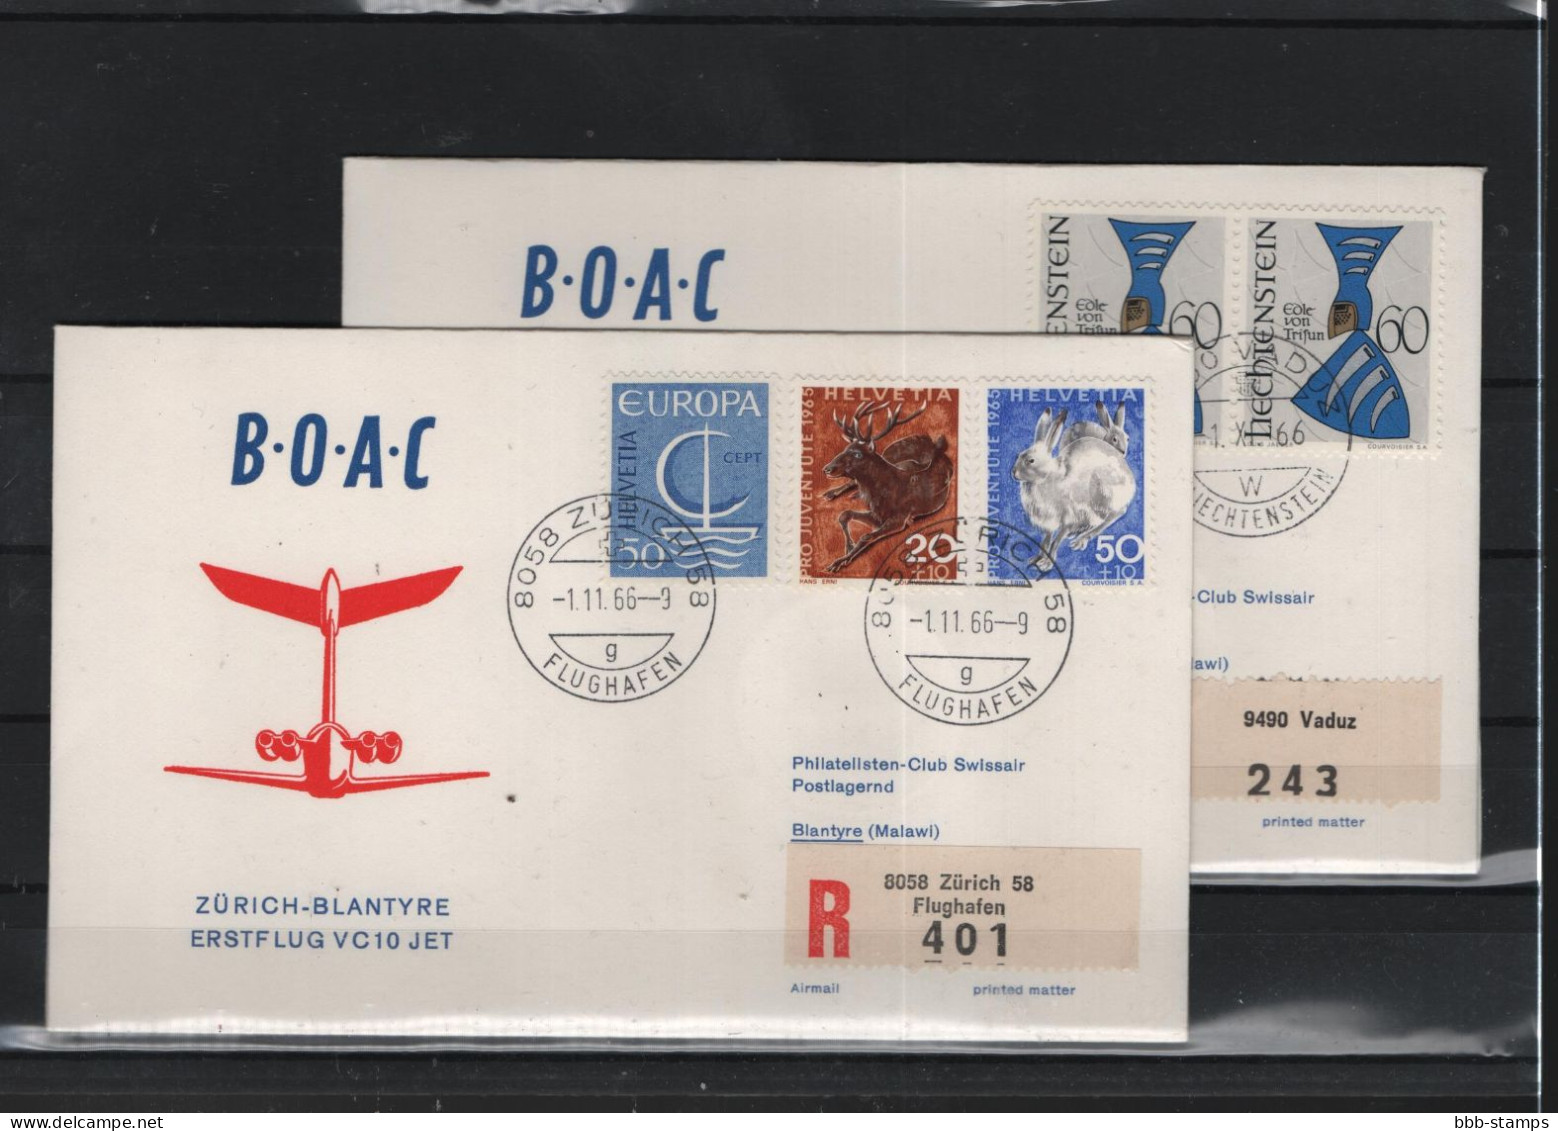 Schweiz Luftpost FFC BOAC 1.11.1966 Zürich - Blantyre Vv - Primeros Vuelos